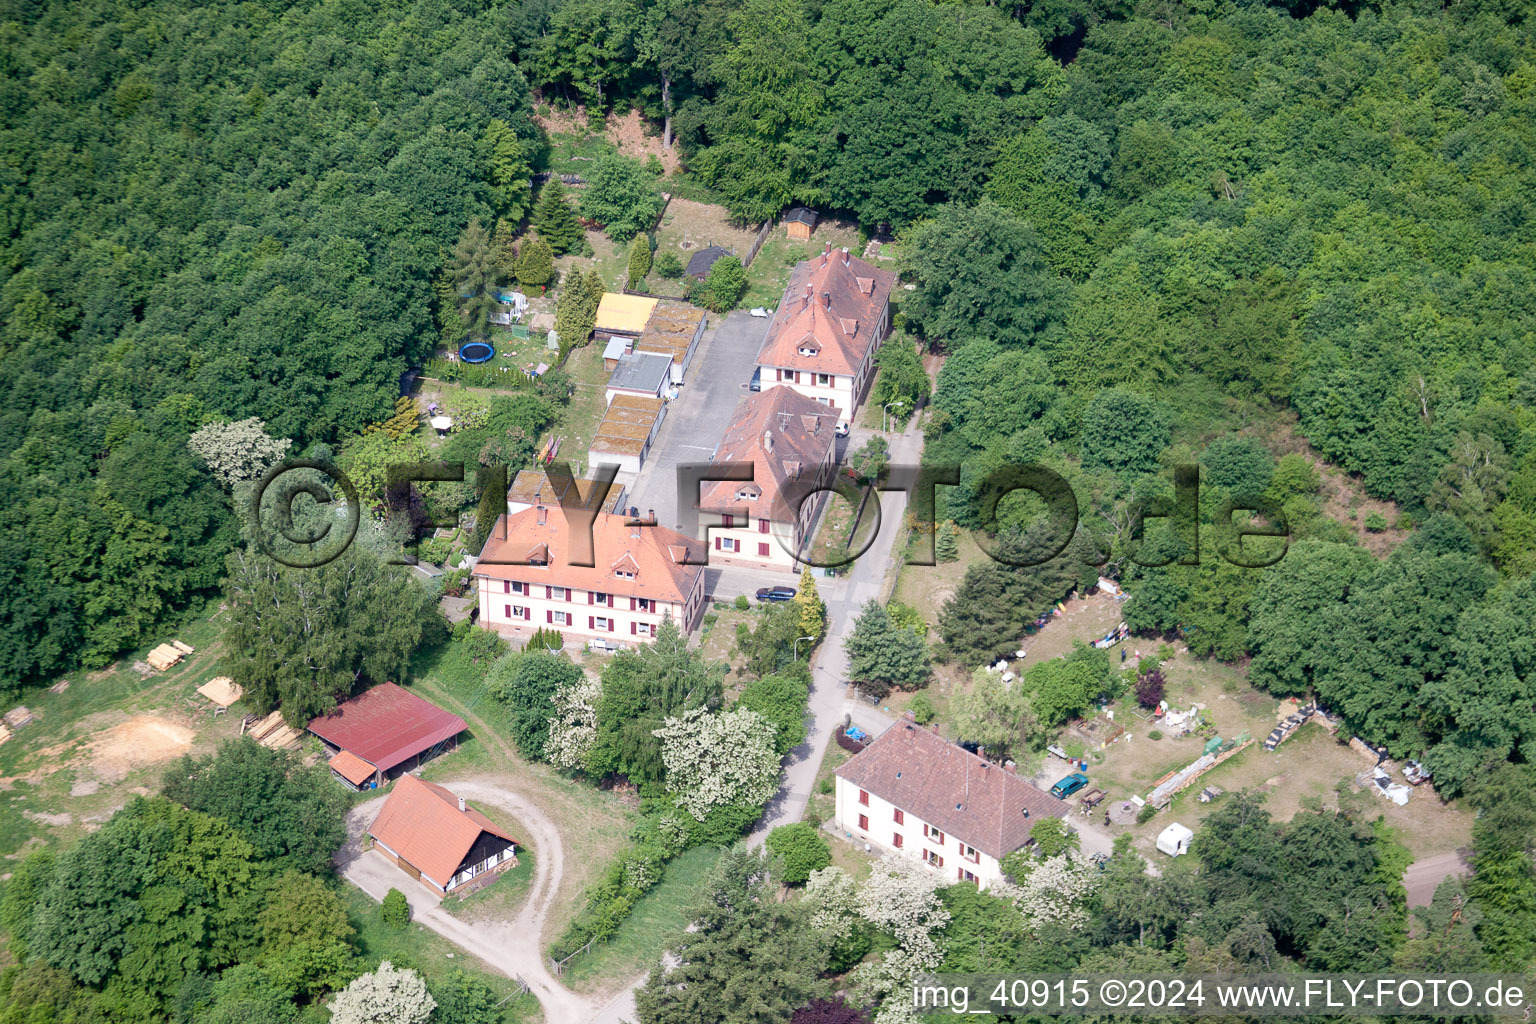 Scheibenhardt (Pfalz), Seufzerallee 4 im Bundesland Rheinland-Pfalz, Deutschland von der Drohne aus gesehen